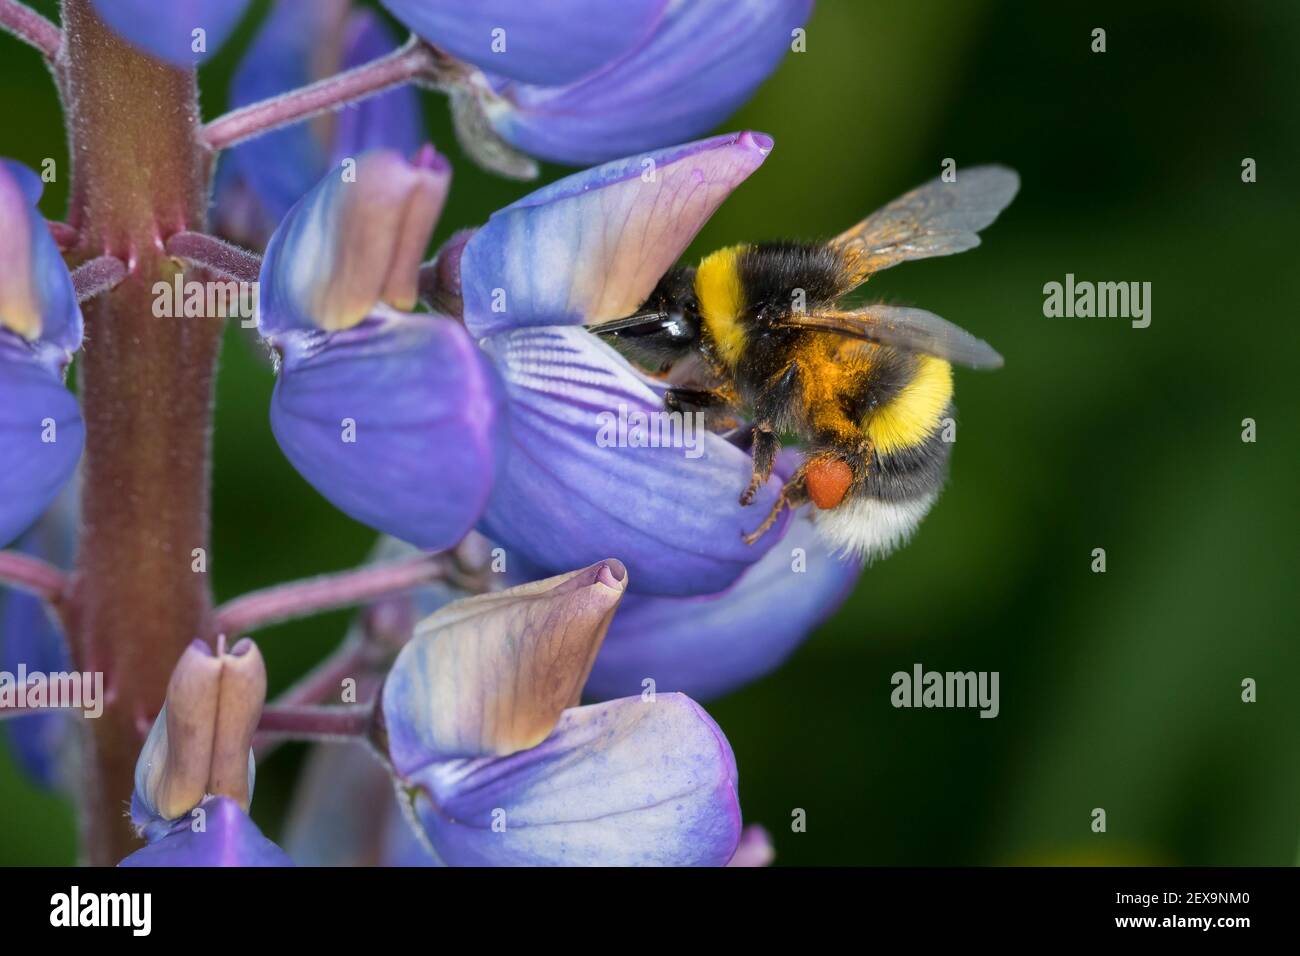 Erdhummel, Erd-Hummel, Weibchen, Blütenbesuch an Lupin, mit Pollenhöschen, Specifiche Bombus, Bombus, Bumble Bee Foto Stock